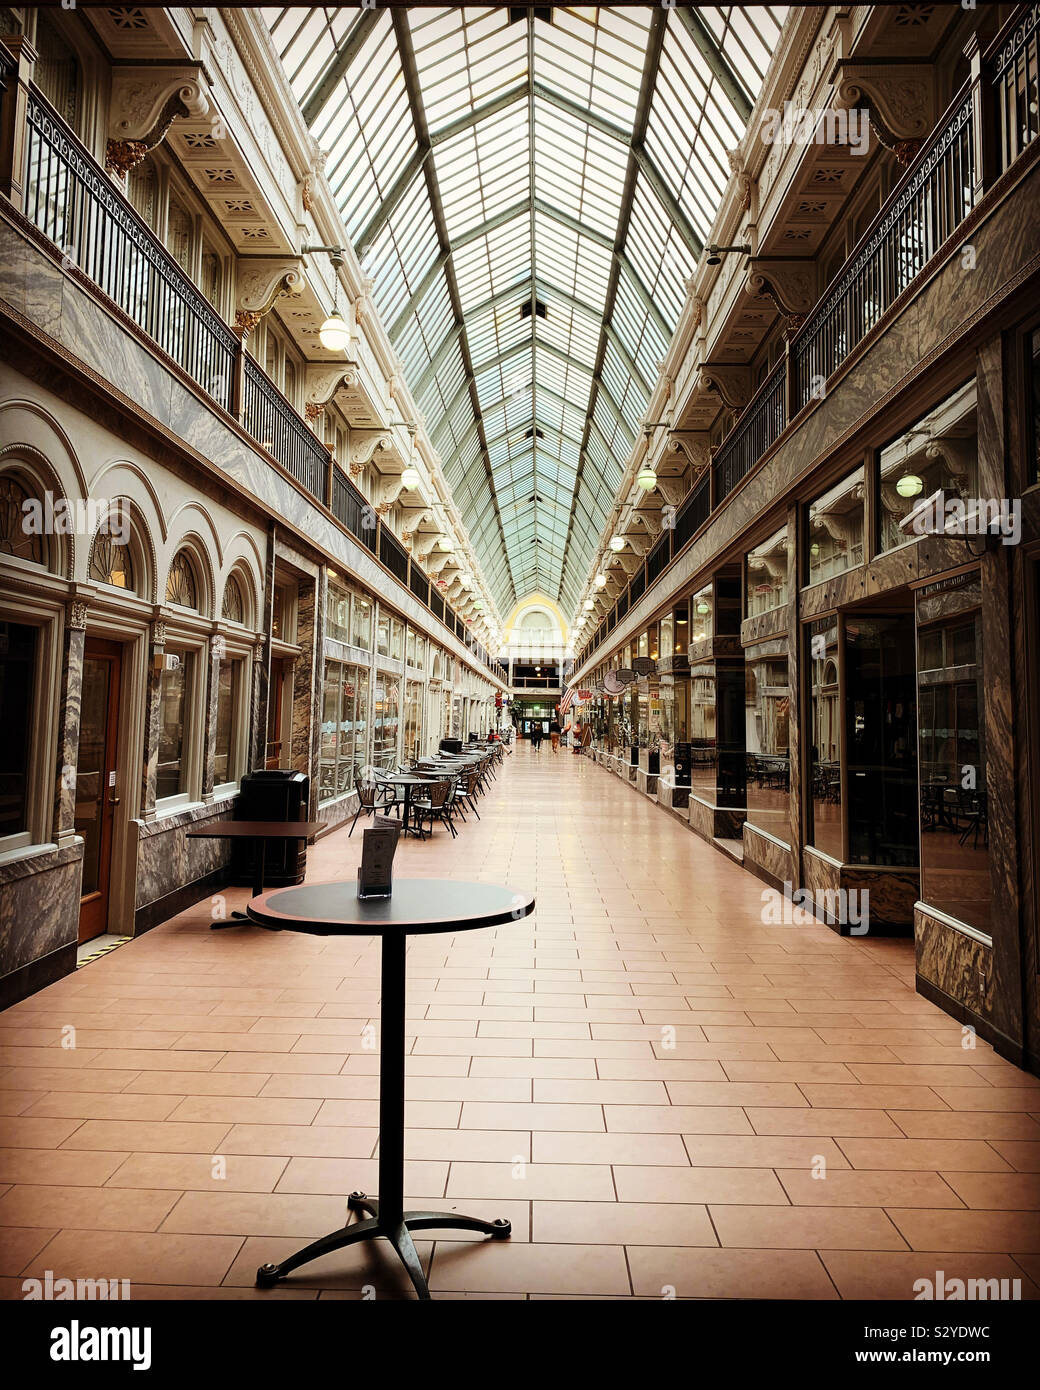 Cleveland Ohio shopping arcade en interiores. Distrito histórico con hermosa arquitectura Foto de stock